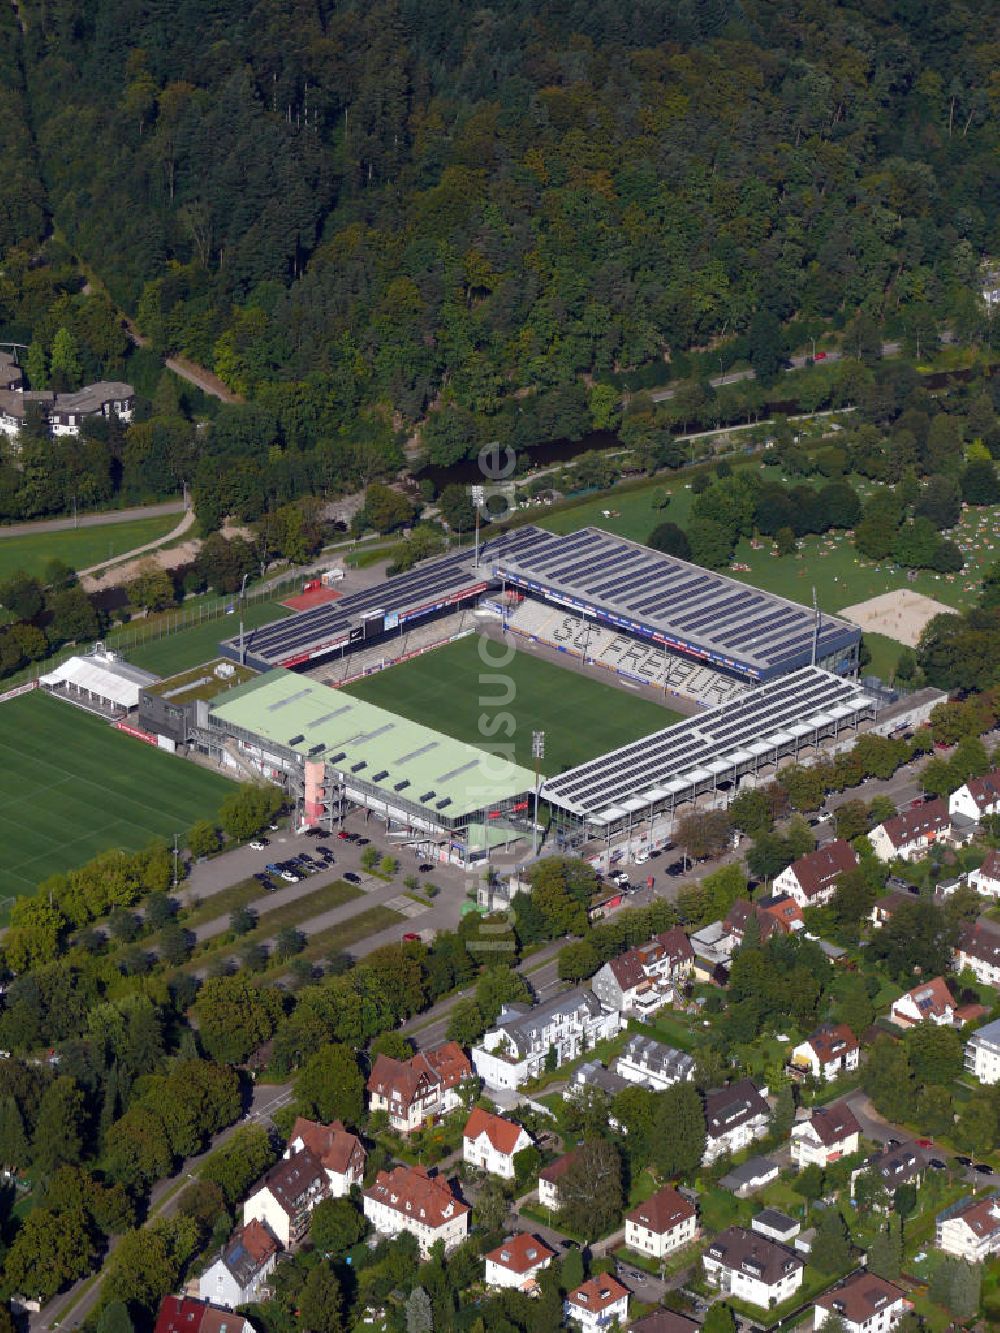 Luftbild Freiburg - Badenova Stadion in Freiburg, Baden-Württemberg